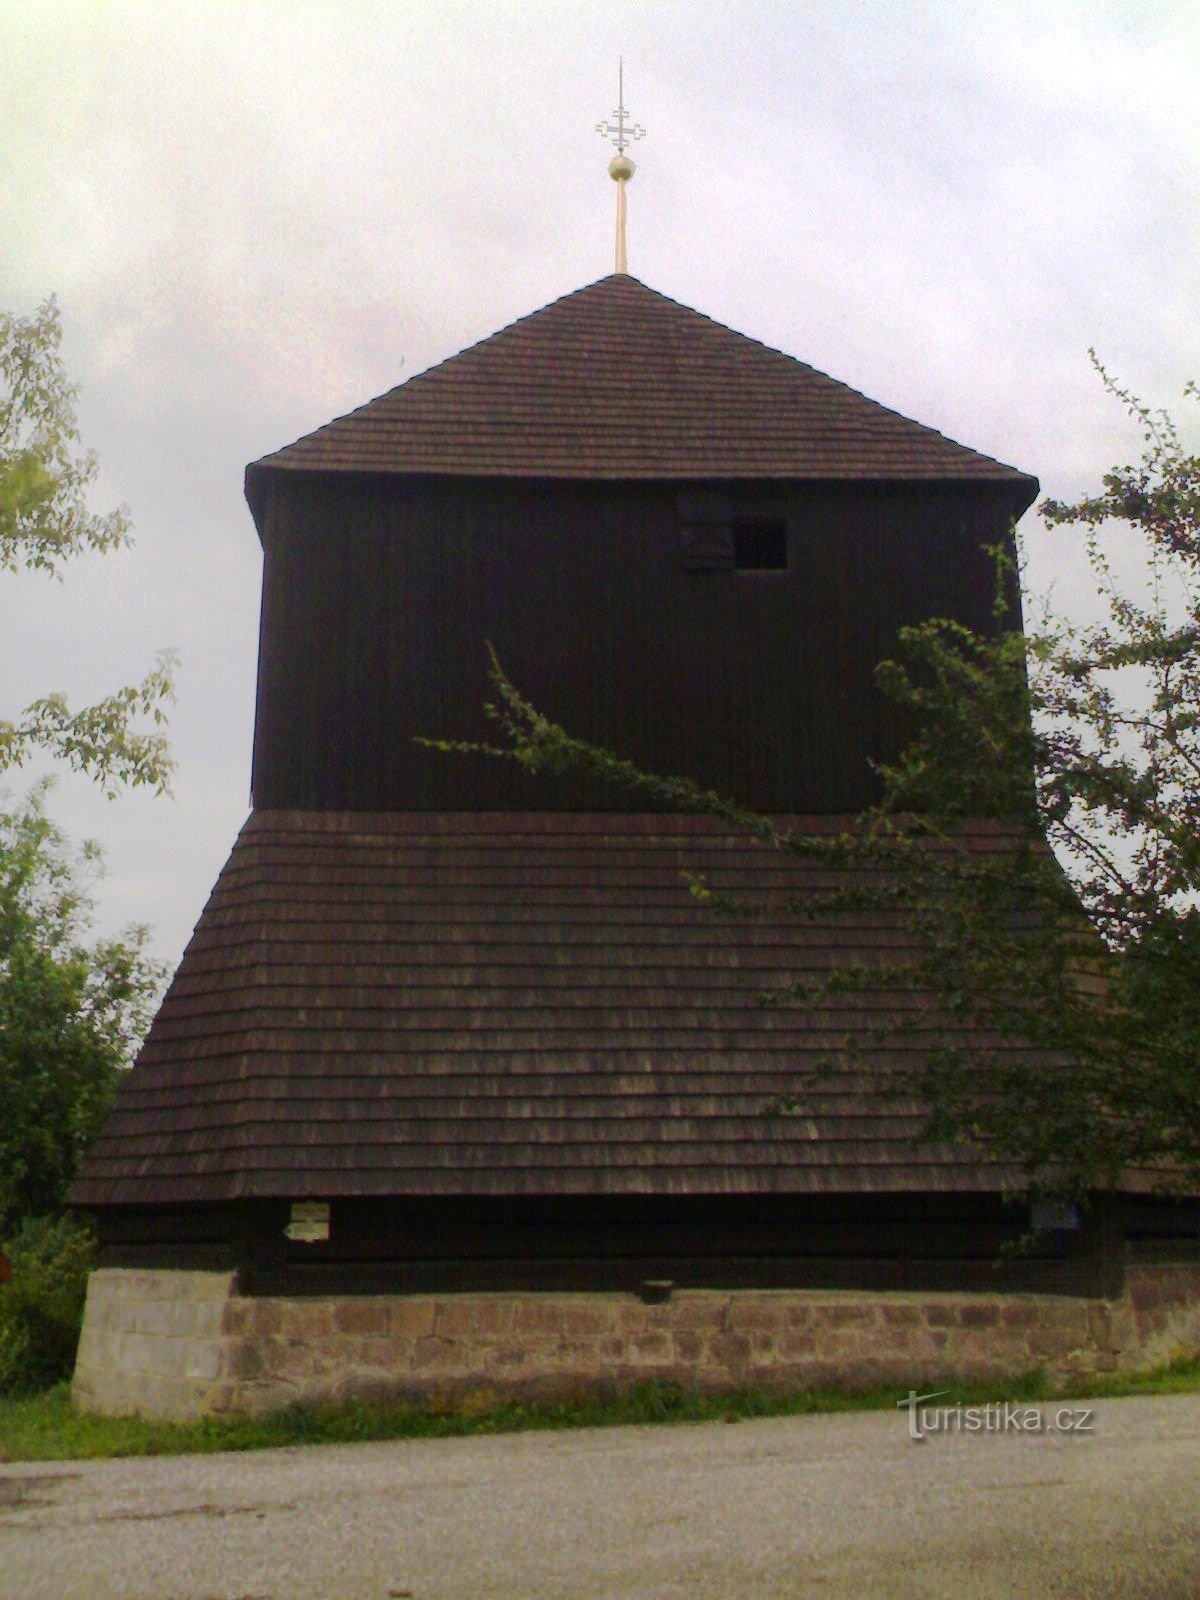 Rovensko pod Troskami - drewniana dzwonnica